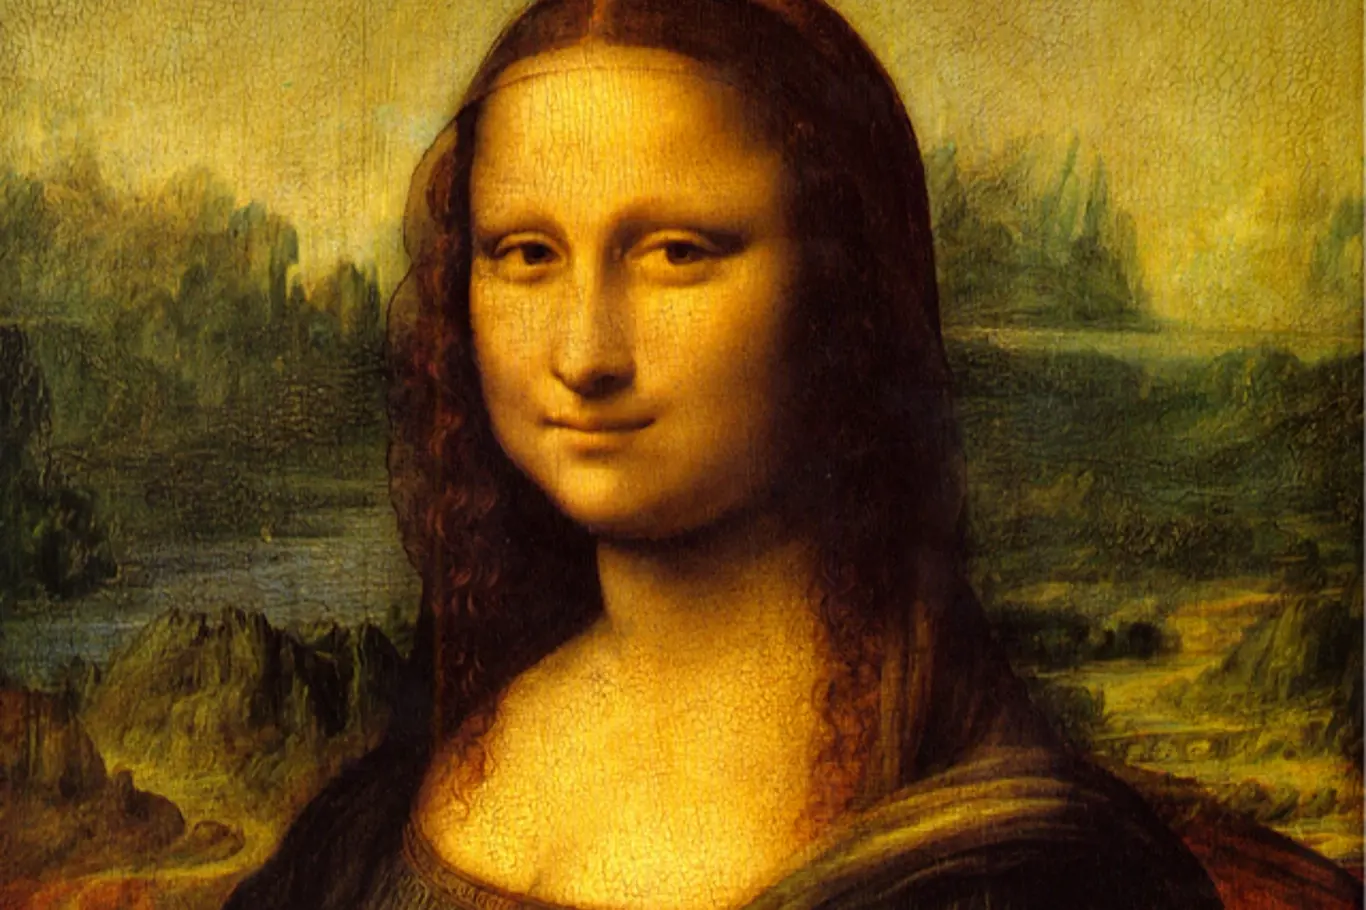 Většina odborníků se shoduje, že dílem Mona Lisa z let 1503 až 1517 Leonardo da Vinci zvěčnil Lisu del Giocondo, ženu florentského obchodníka Francesca del Gioconda.